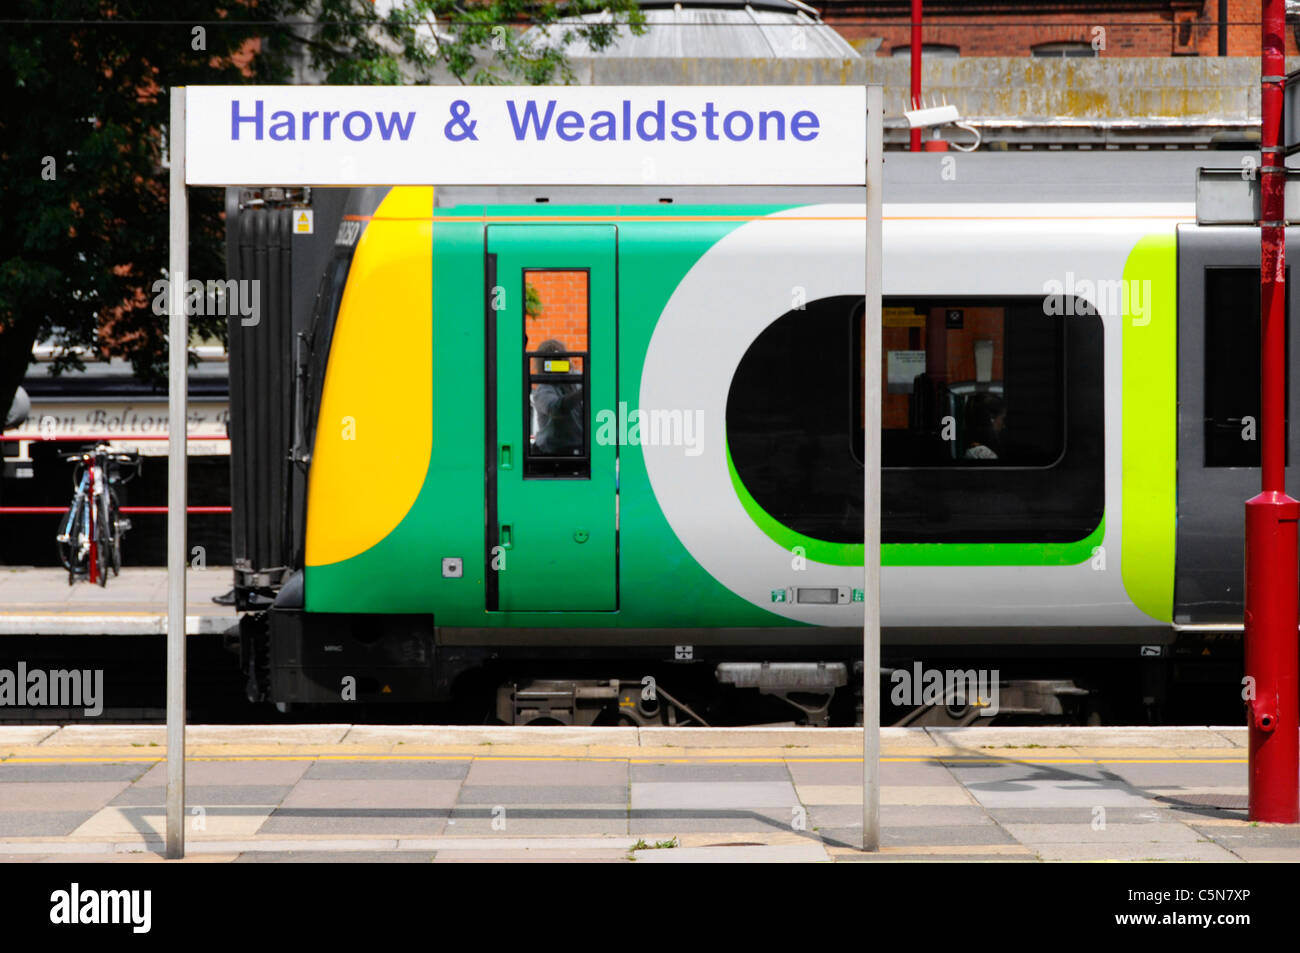 London Midland moderne Bahn & Drivers cab von Harrow & Wealdstone Bahnhof Zeichen warten, öv-station England UK abzuweichen gerahmt Stockfoto